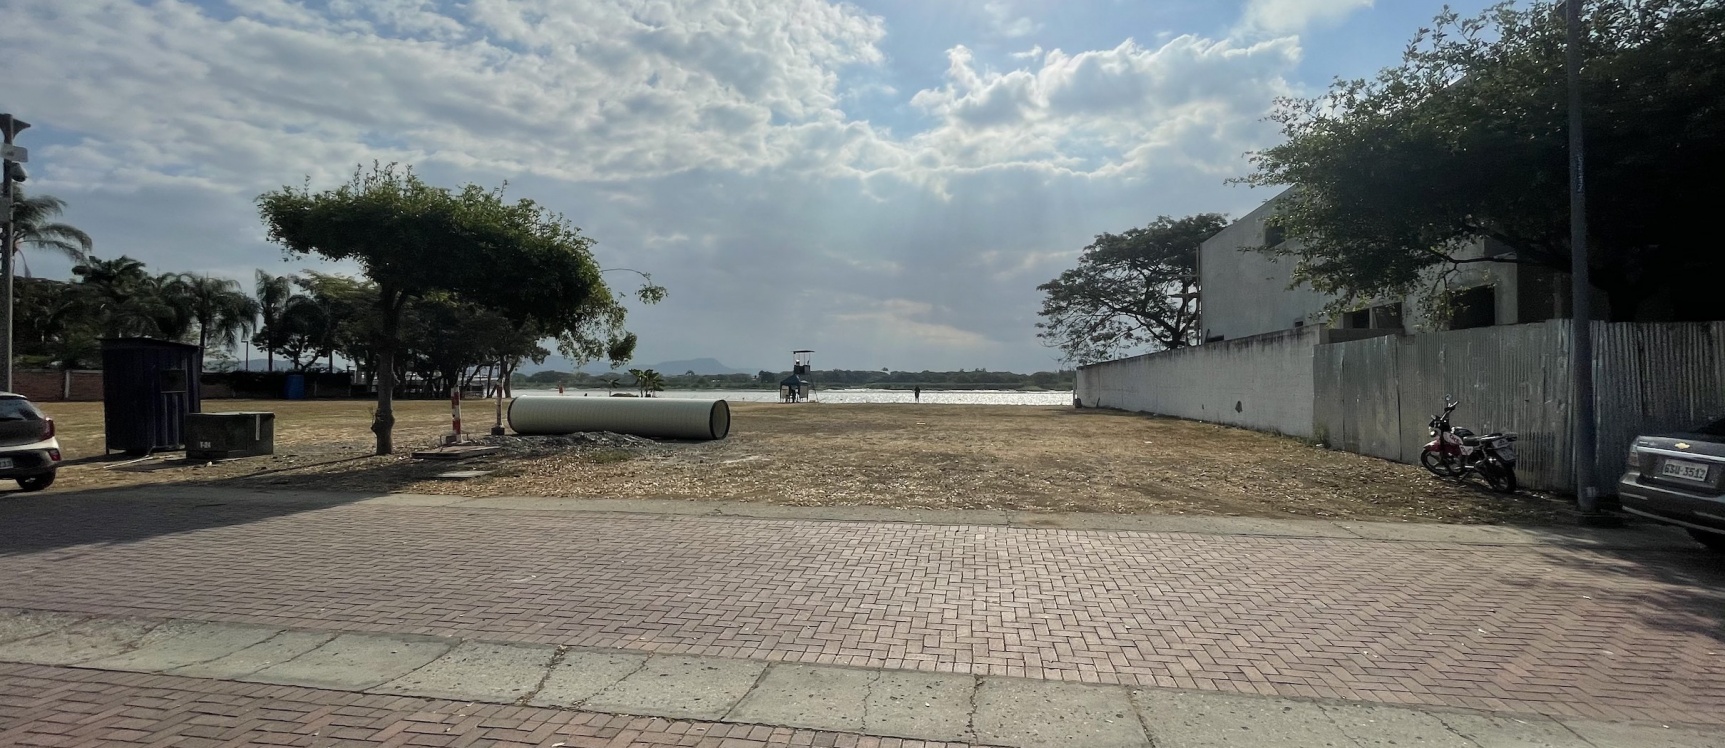 GeoBienes - Terreno en venta ubicado en la urbanización Guayaquil Tenis, frente al río - Plusvalia Guayaquil Casas de venta y alquiler Inmobiliaria Ecuador